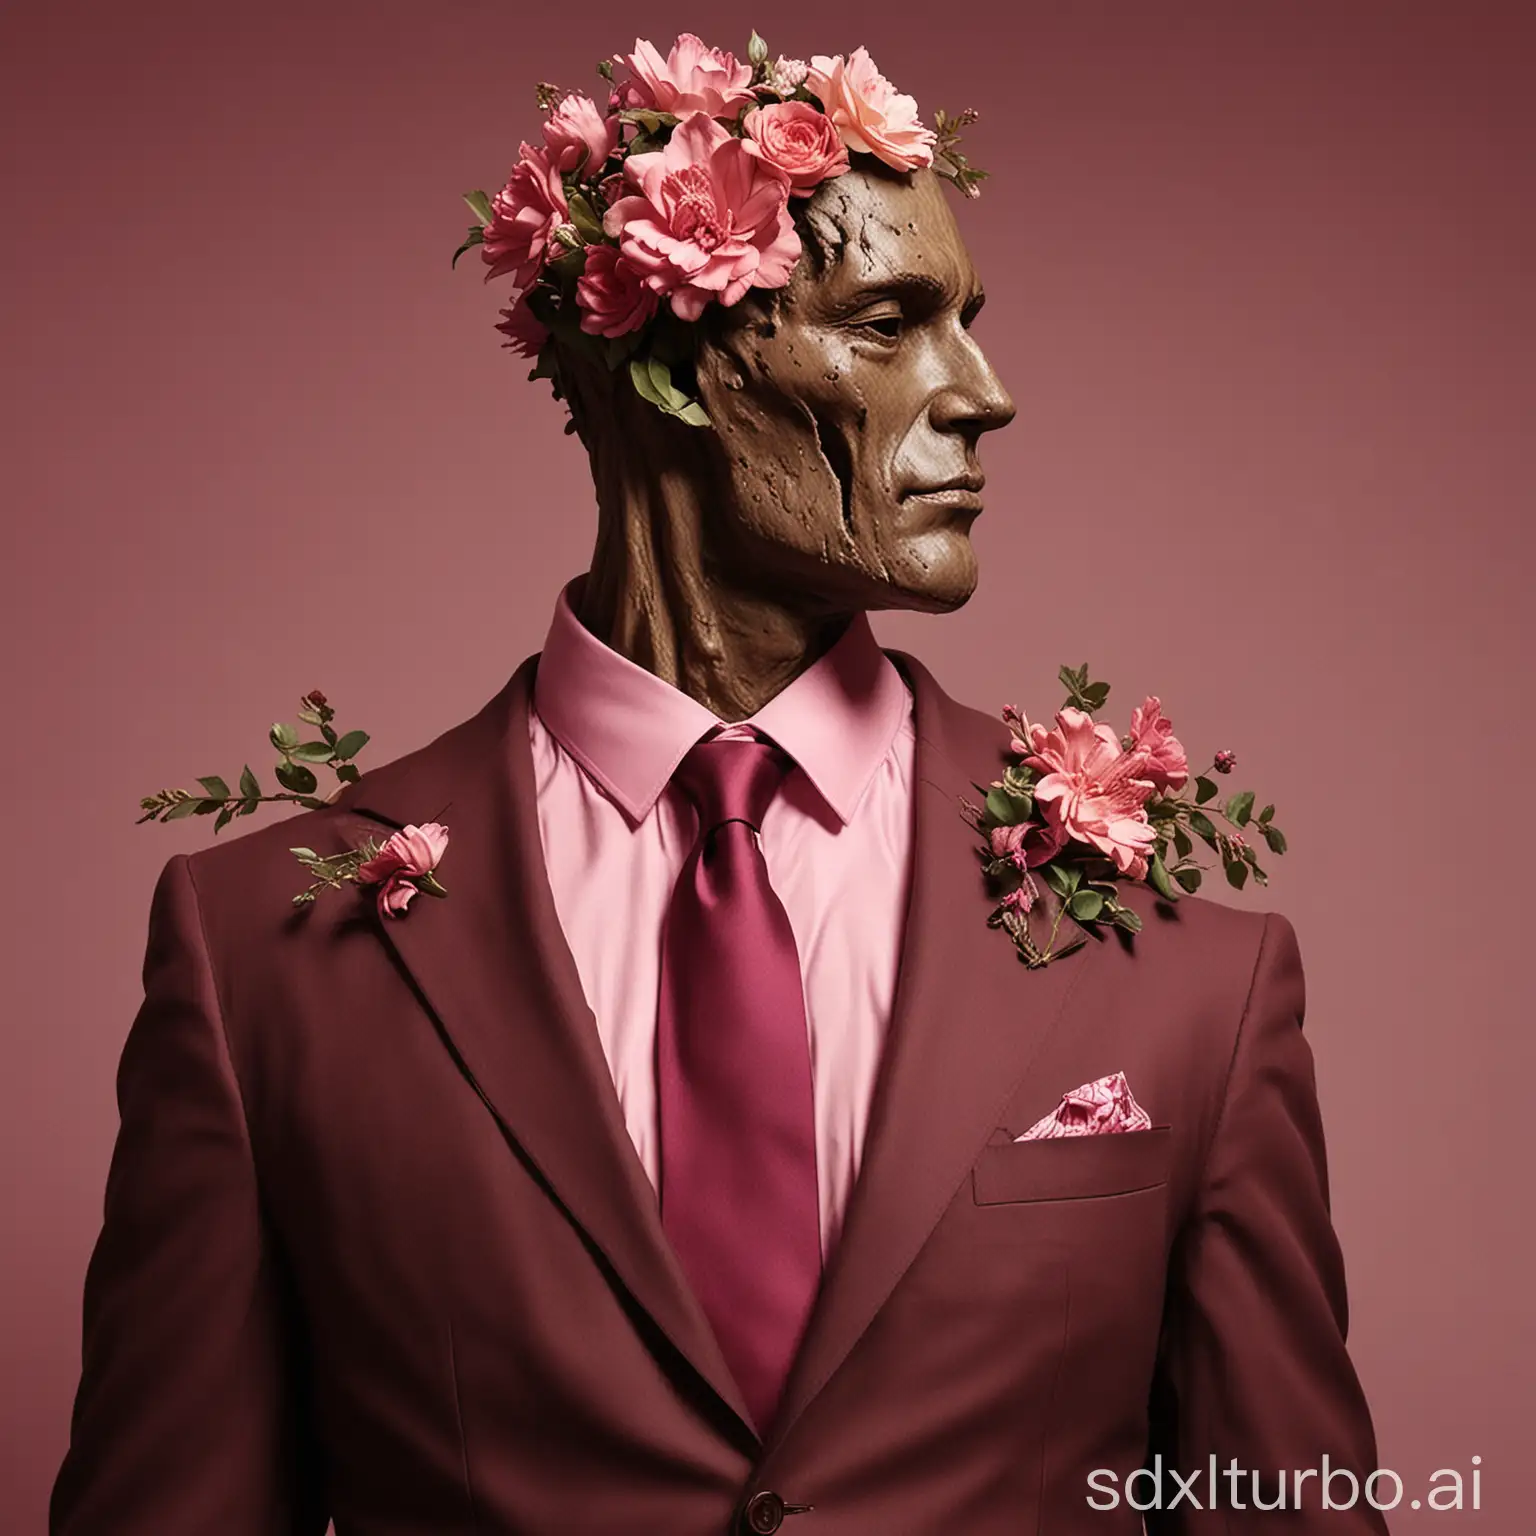 Vintage-Floral-Man-in-Brown-Suit-on-Maroon-Background